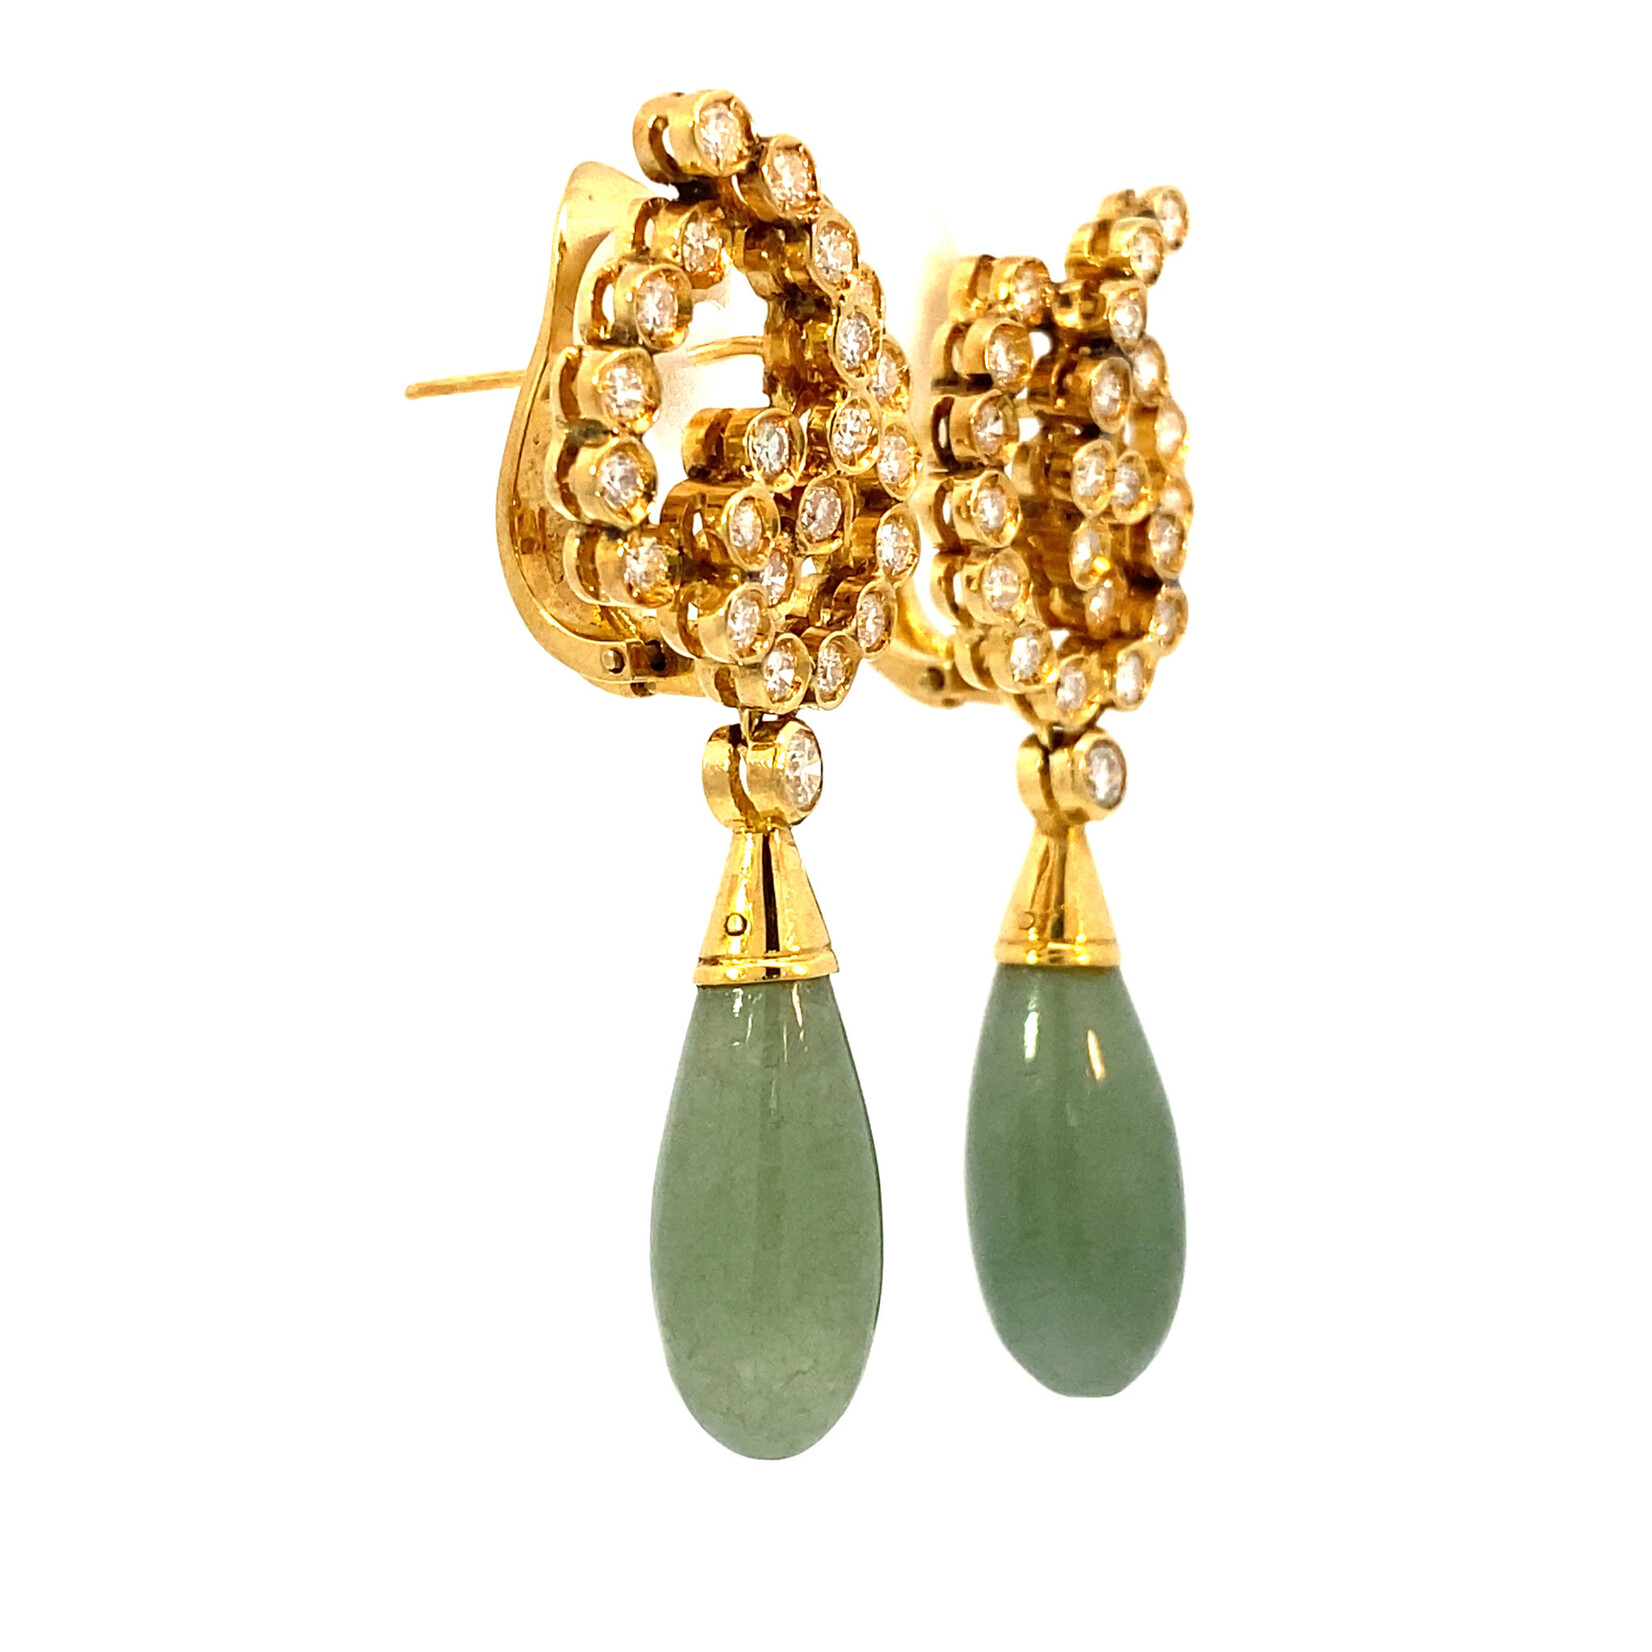 18K Yellow Gold Diamond & Jade earrings on Omega Backs D+/-1.40cttw